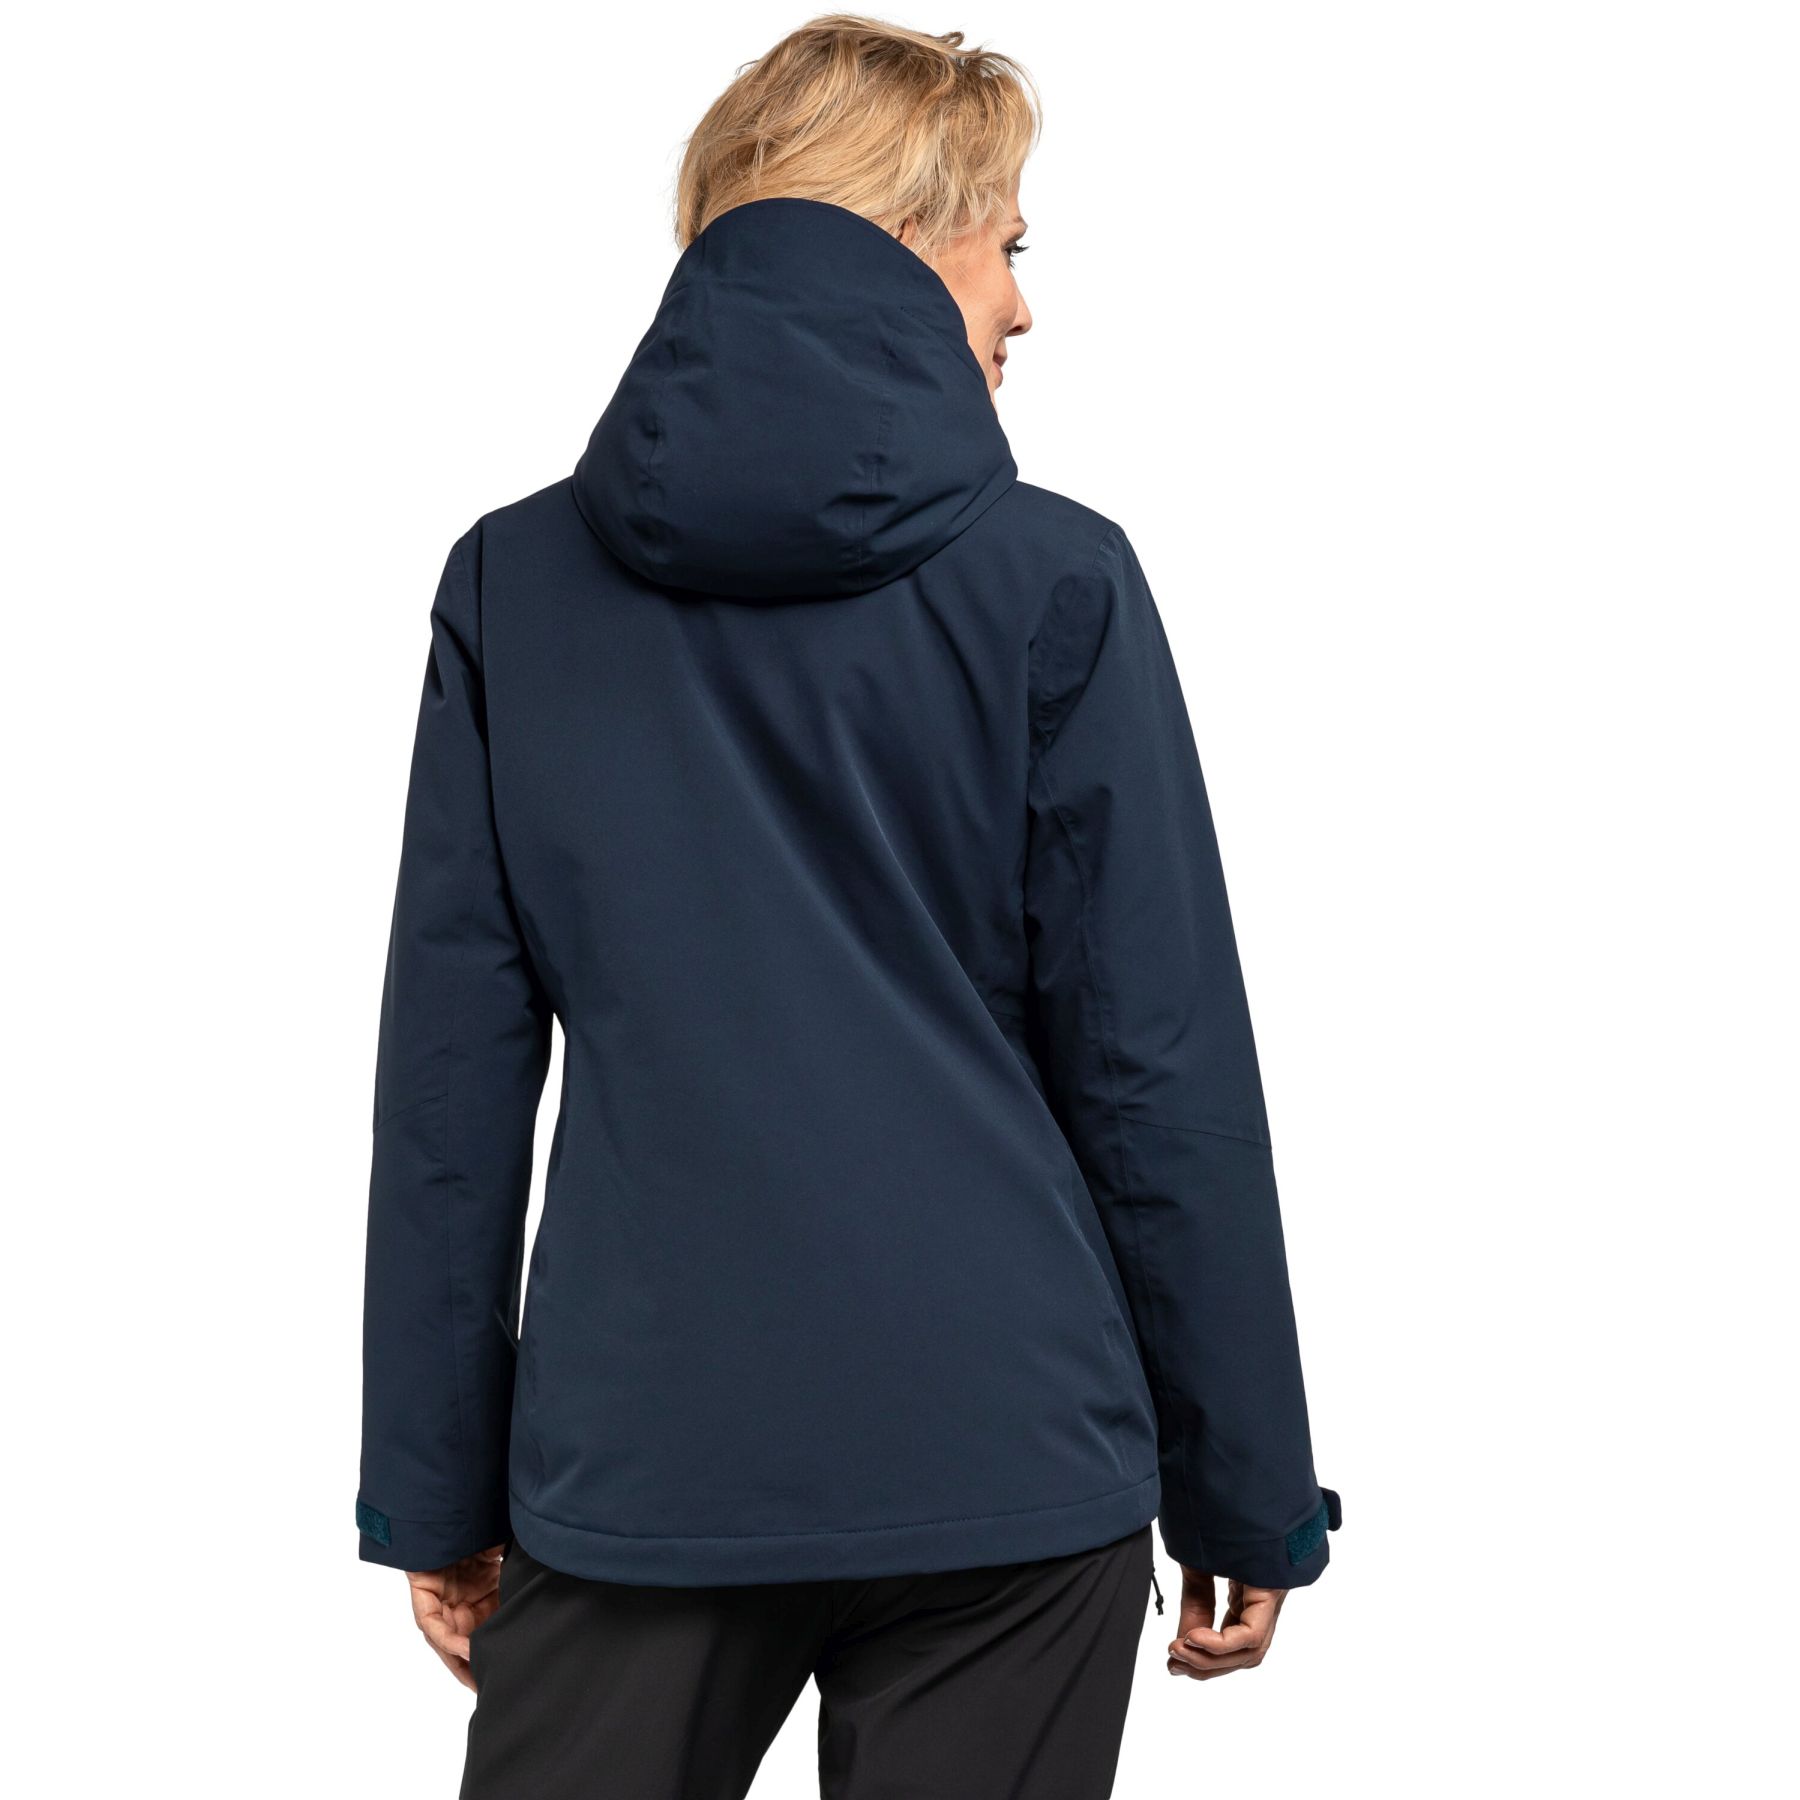 Torspitze buy - Jacken Jacket L Schöffel online blue